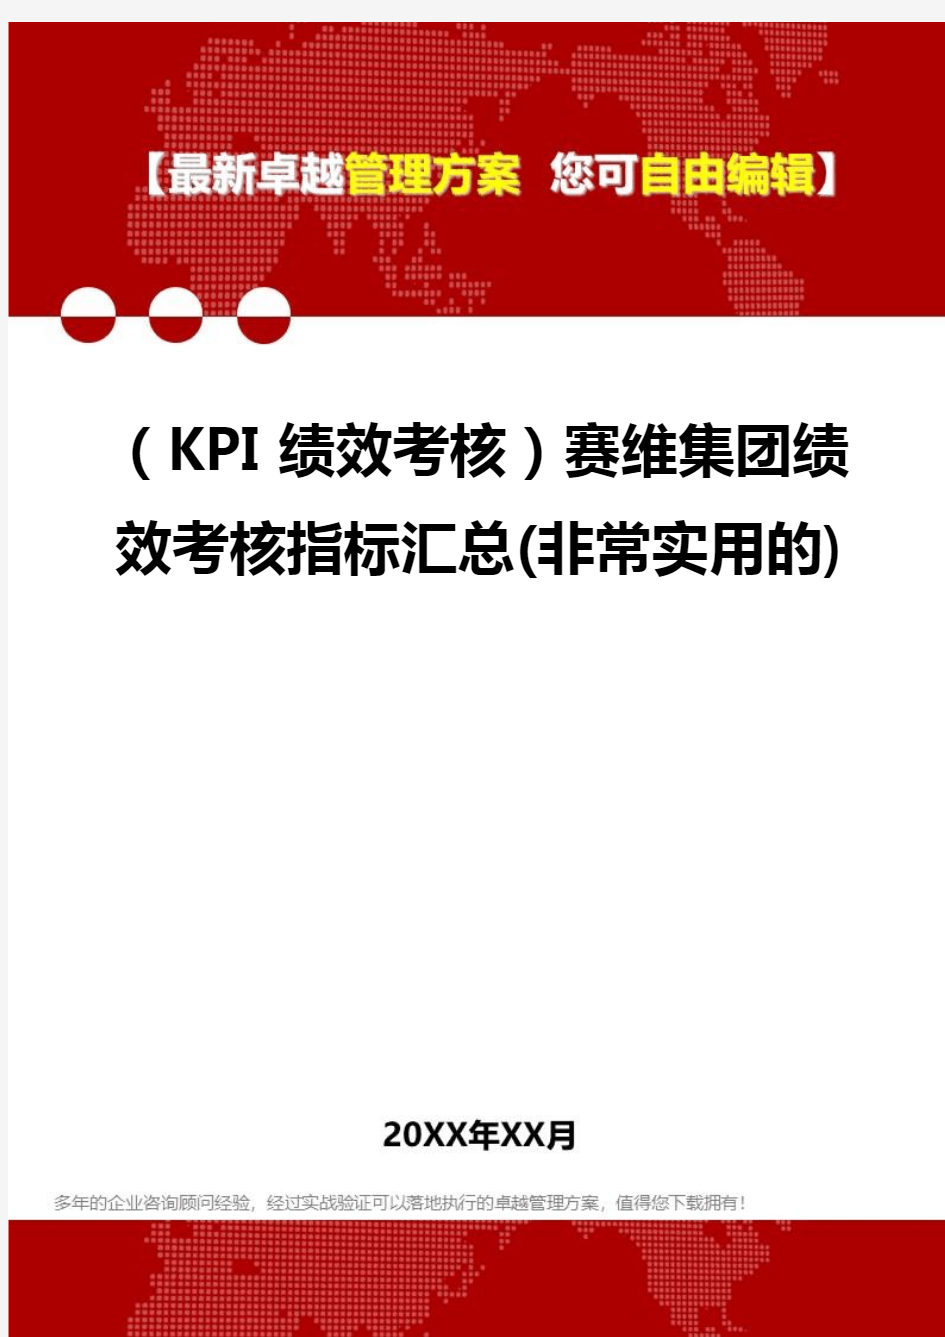 2020(KPI绩效考核)赛维集团绩效考核指标汇总(非常实用的)